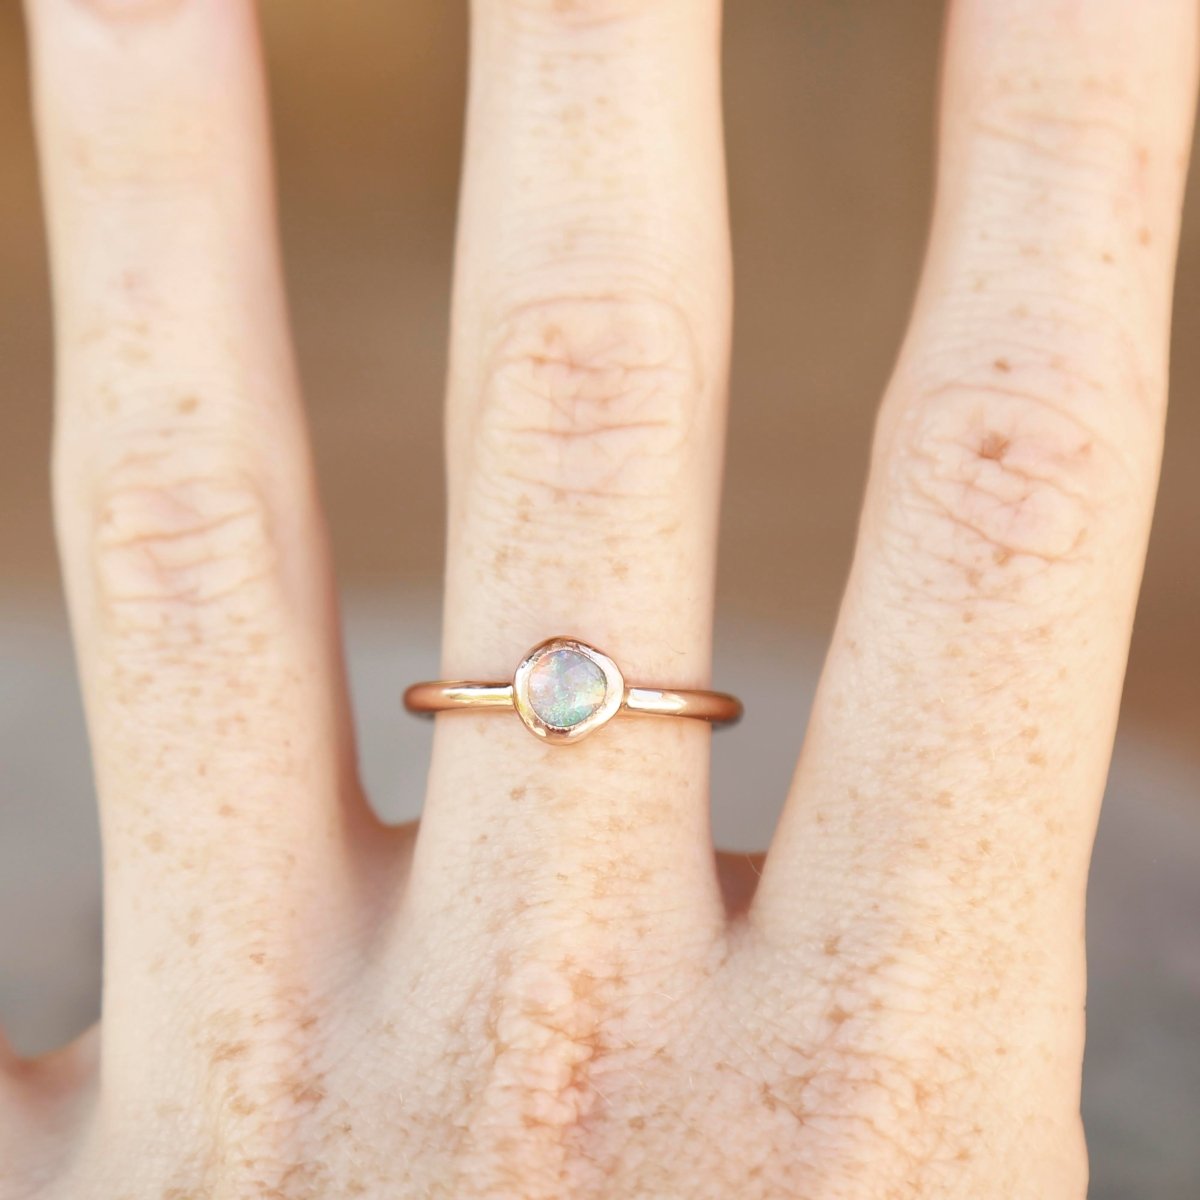 wearing an opal ring